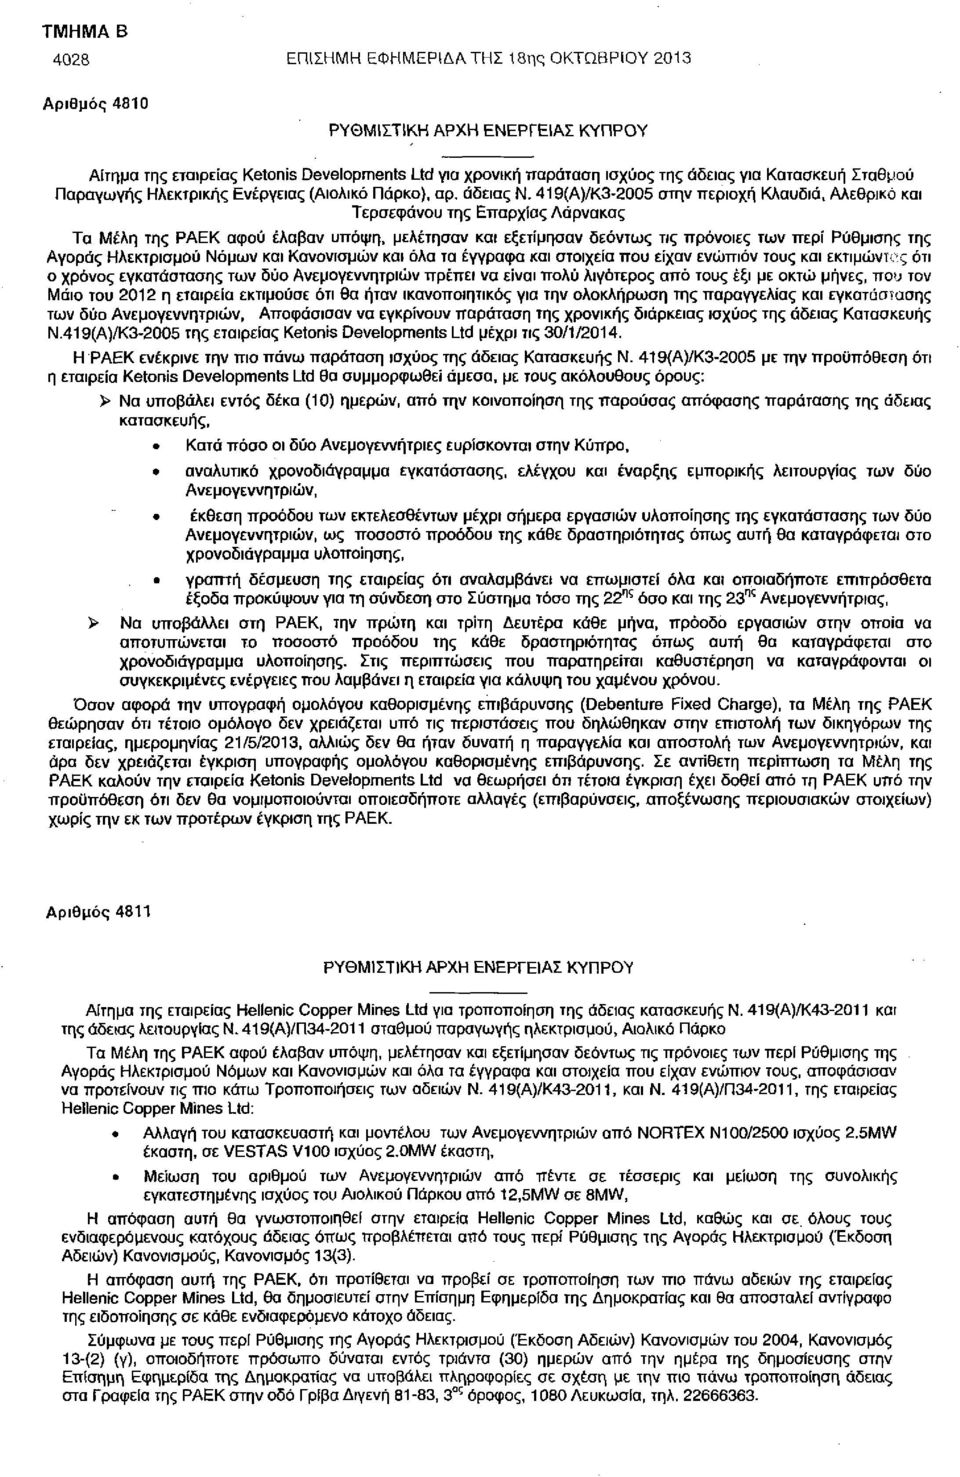 419(Α)/Κ3-2005 στην περιοχή Κλαυδιά, Αλεθρικό και Τερσεφάνου της Επαρχίας Λάρνακας Τα Μέλη της ΡΑΕΚ αφού έλαβαν υπόψη, μελέτησαν και εξετίμησαν δεόντως τις πρόνοιες των περί Ρύθμισης της Αγοράς